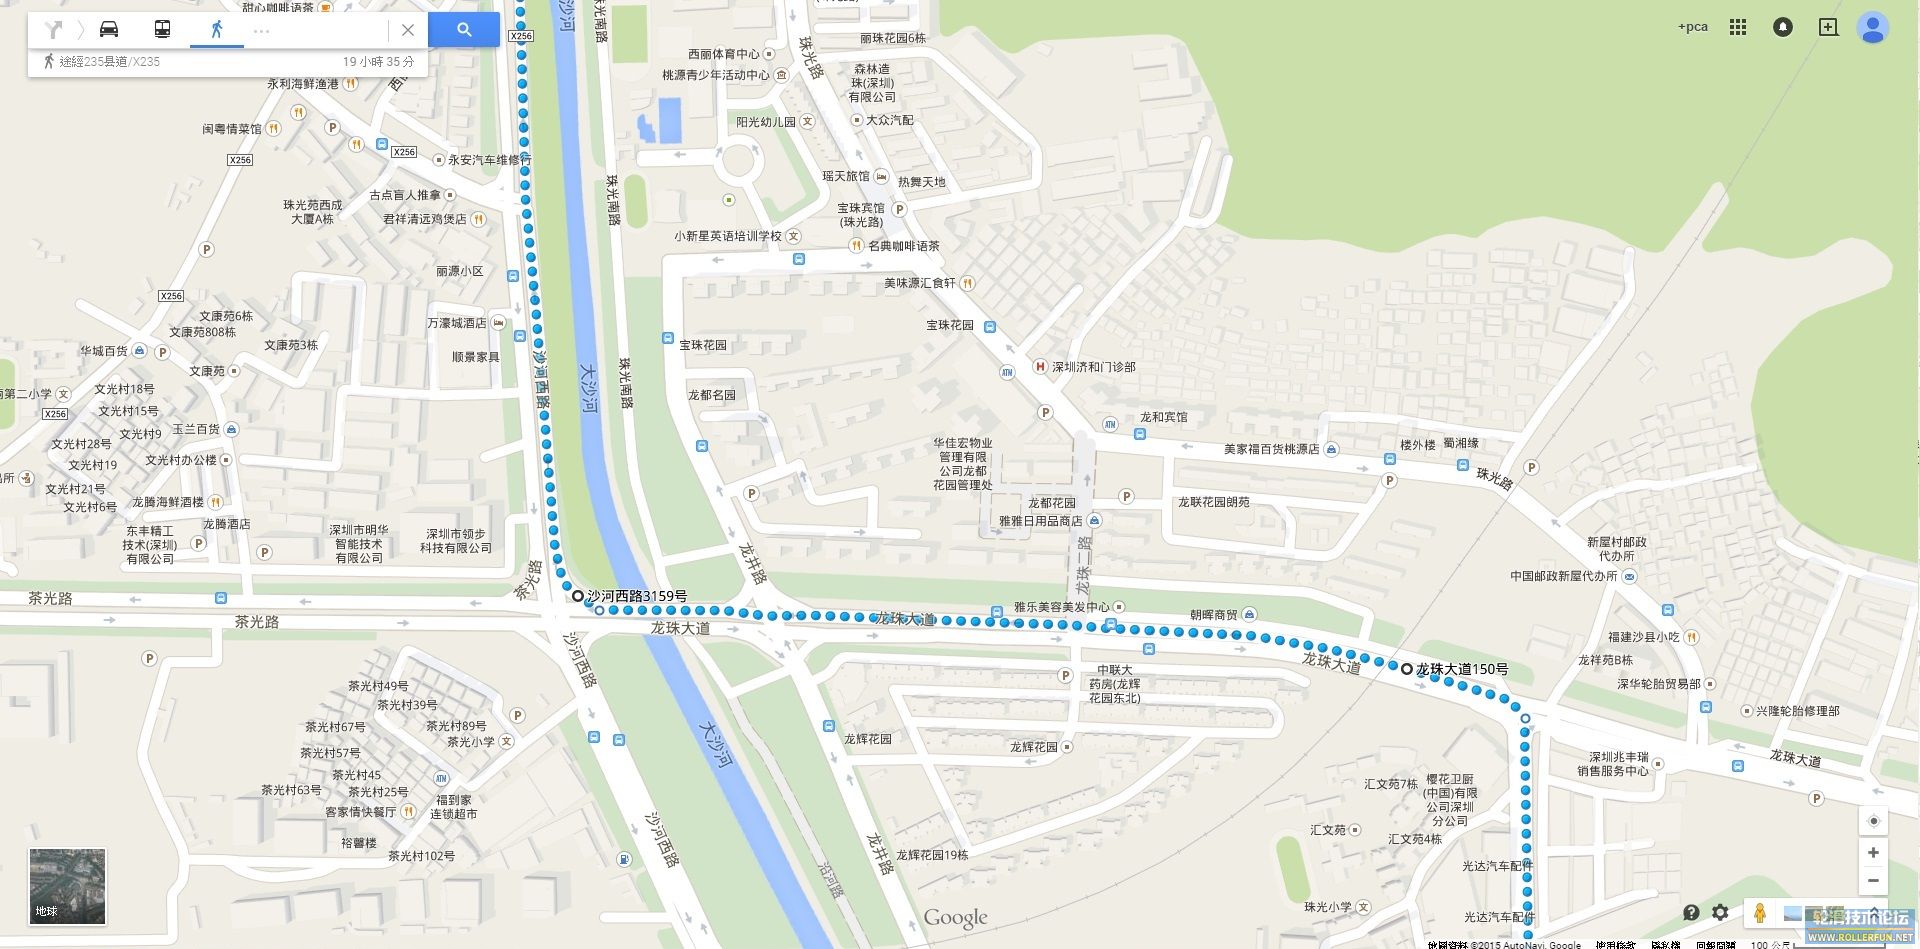 7.沿龍珠三路直去至路口左轉入龍珠大道直去至沙河西路X256右轉.jpg